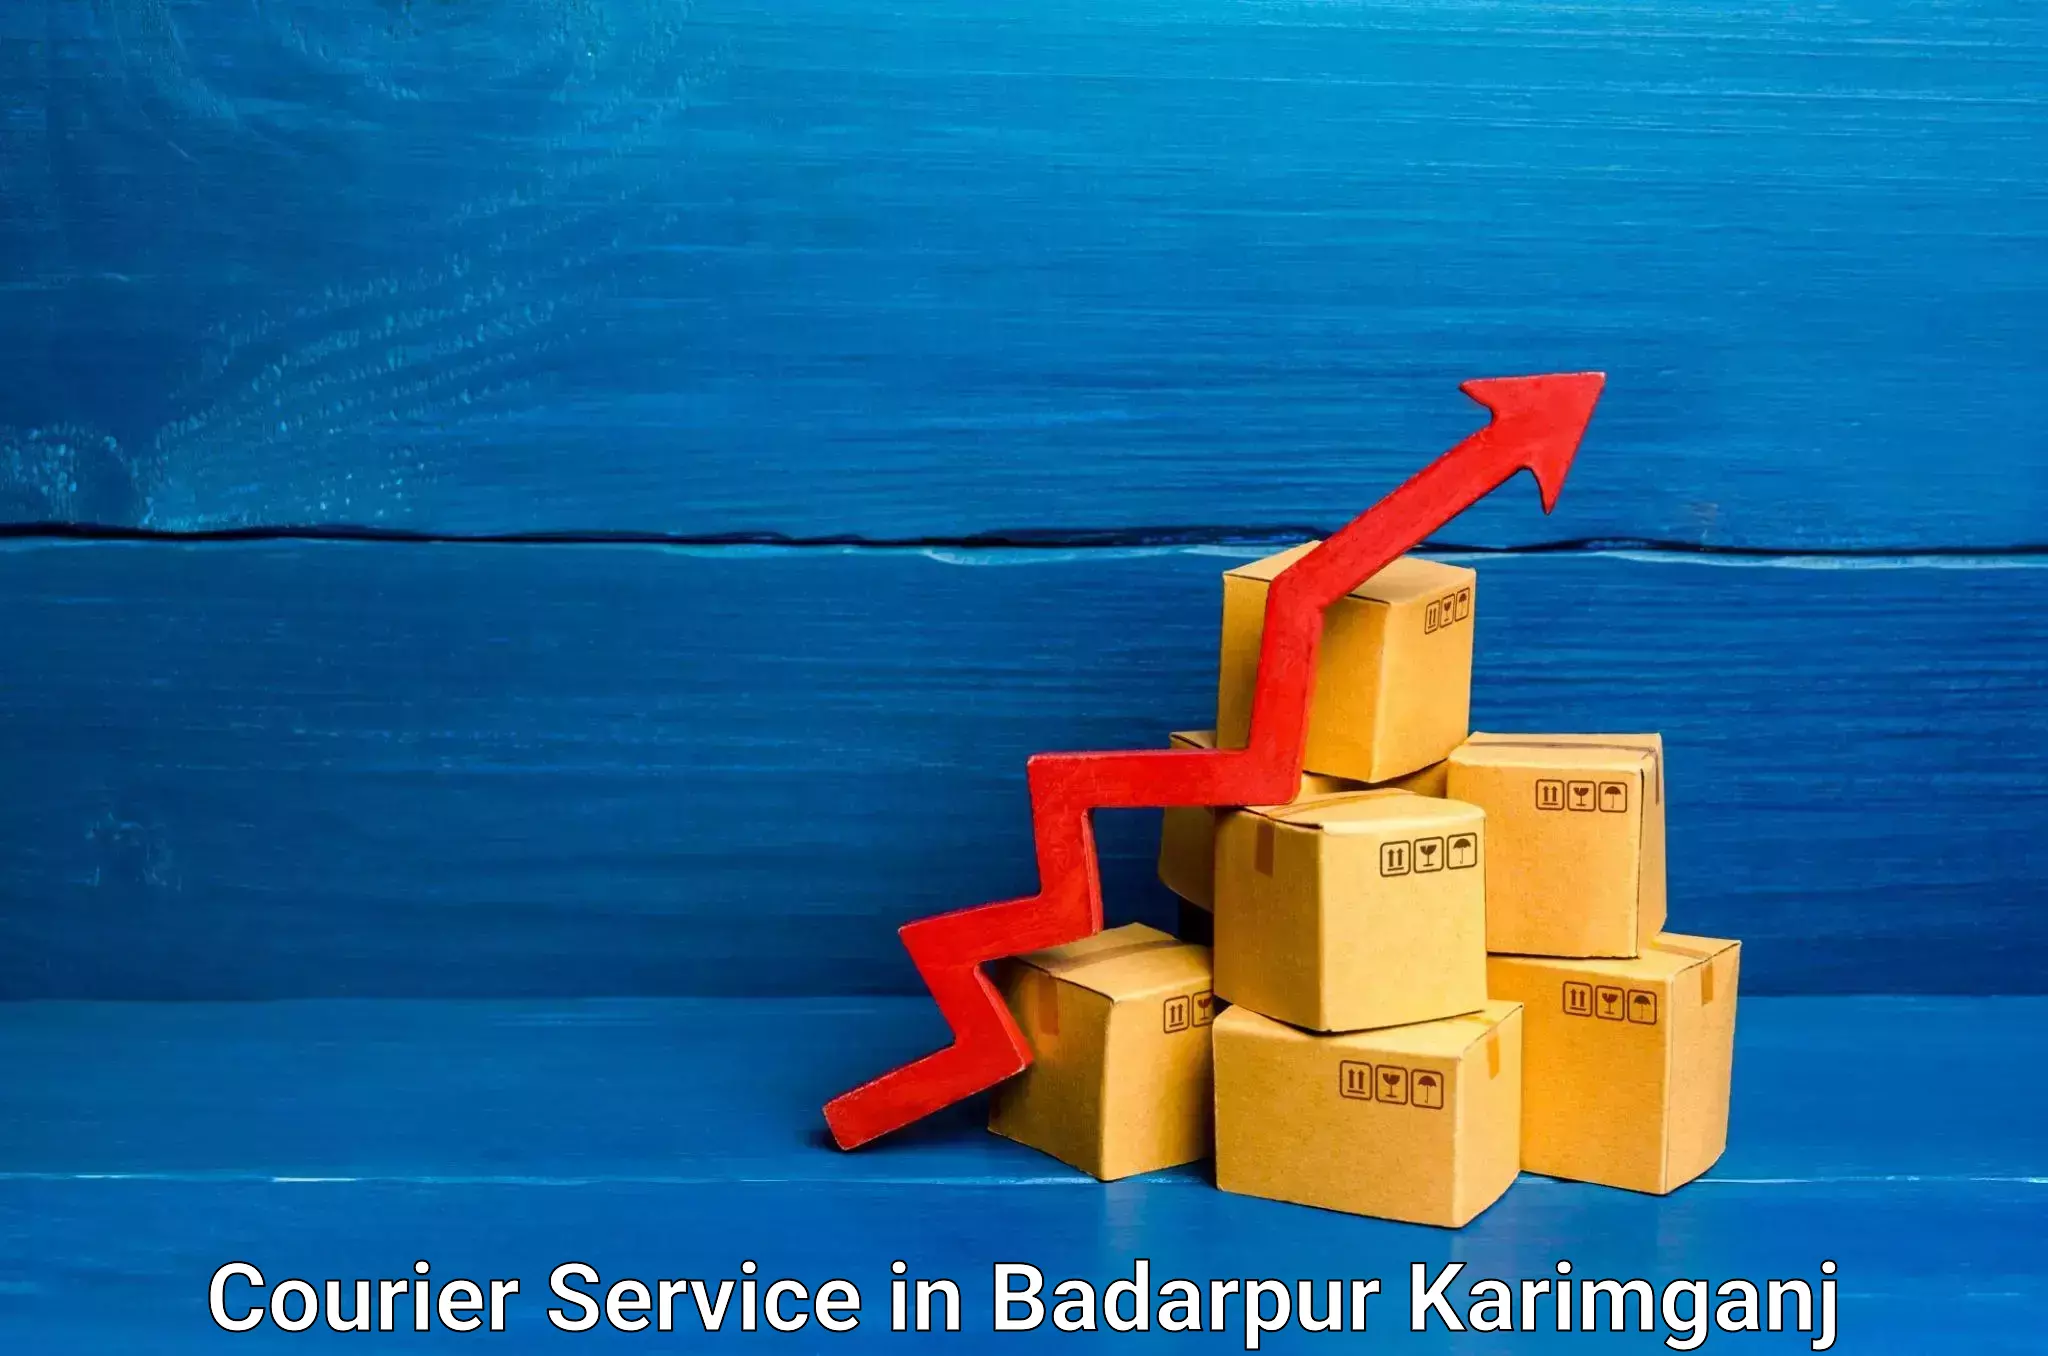 Remote area delivery in Badarpur Karimganj